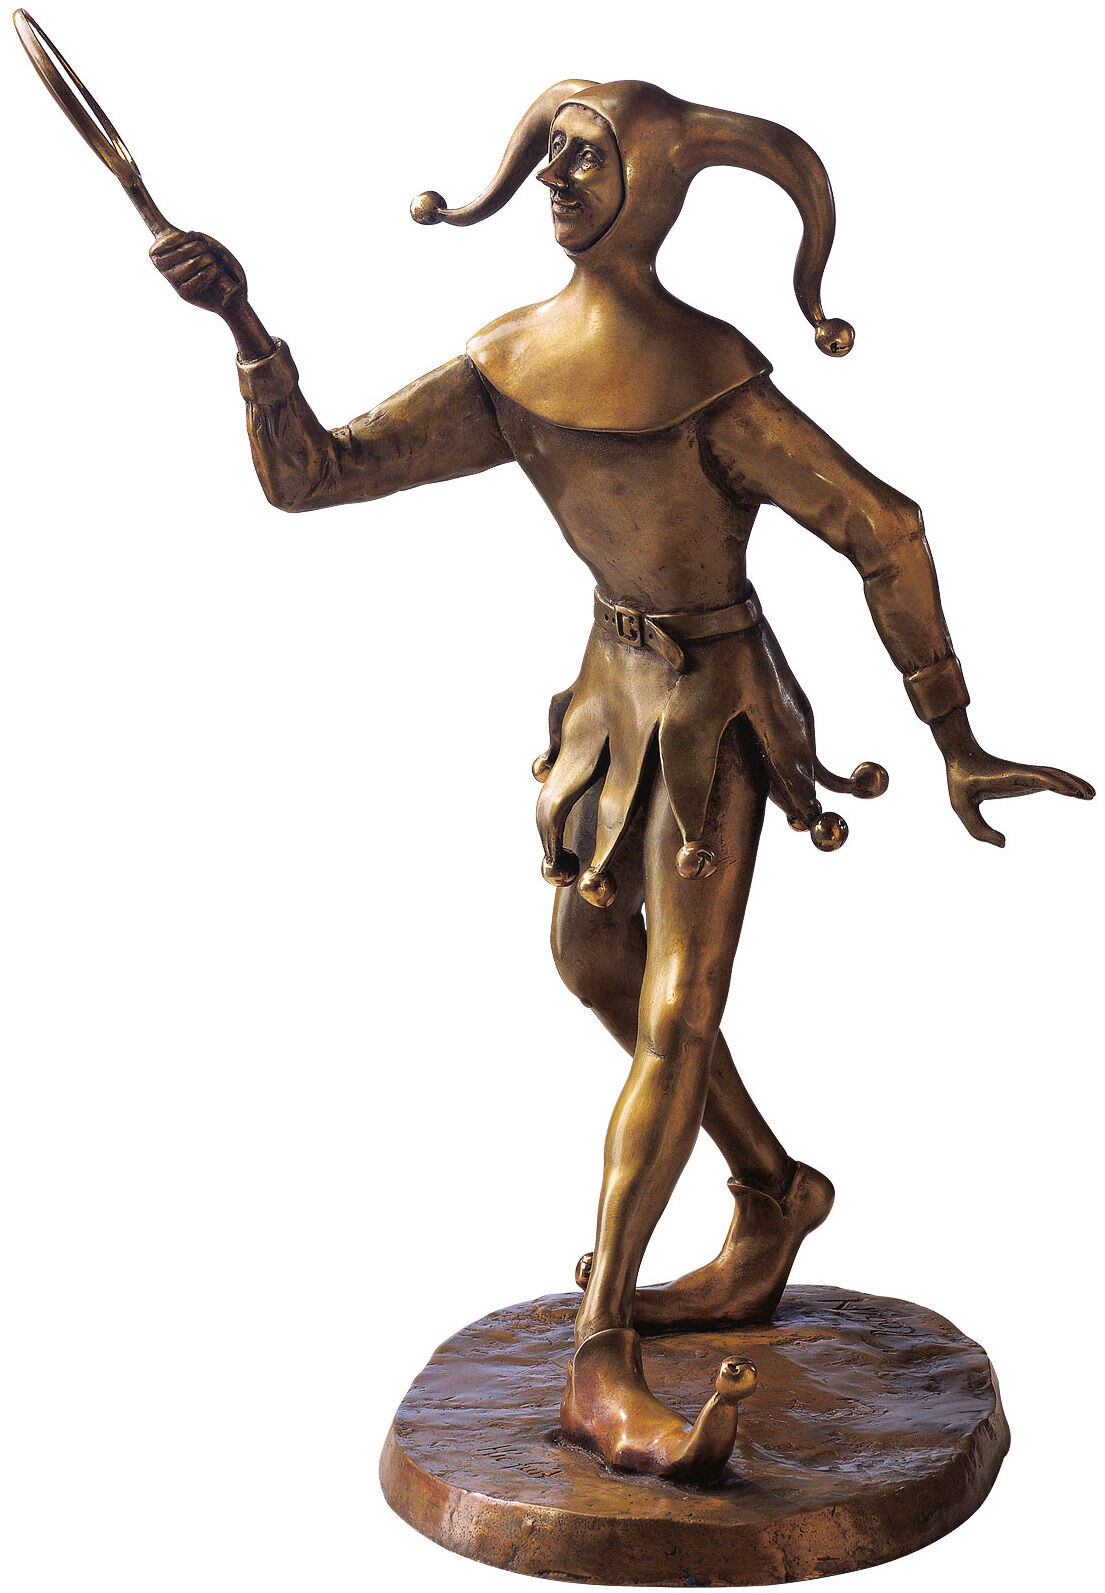 Skulptur "Till Eulenspiegel", Bronze von RobiN